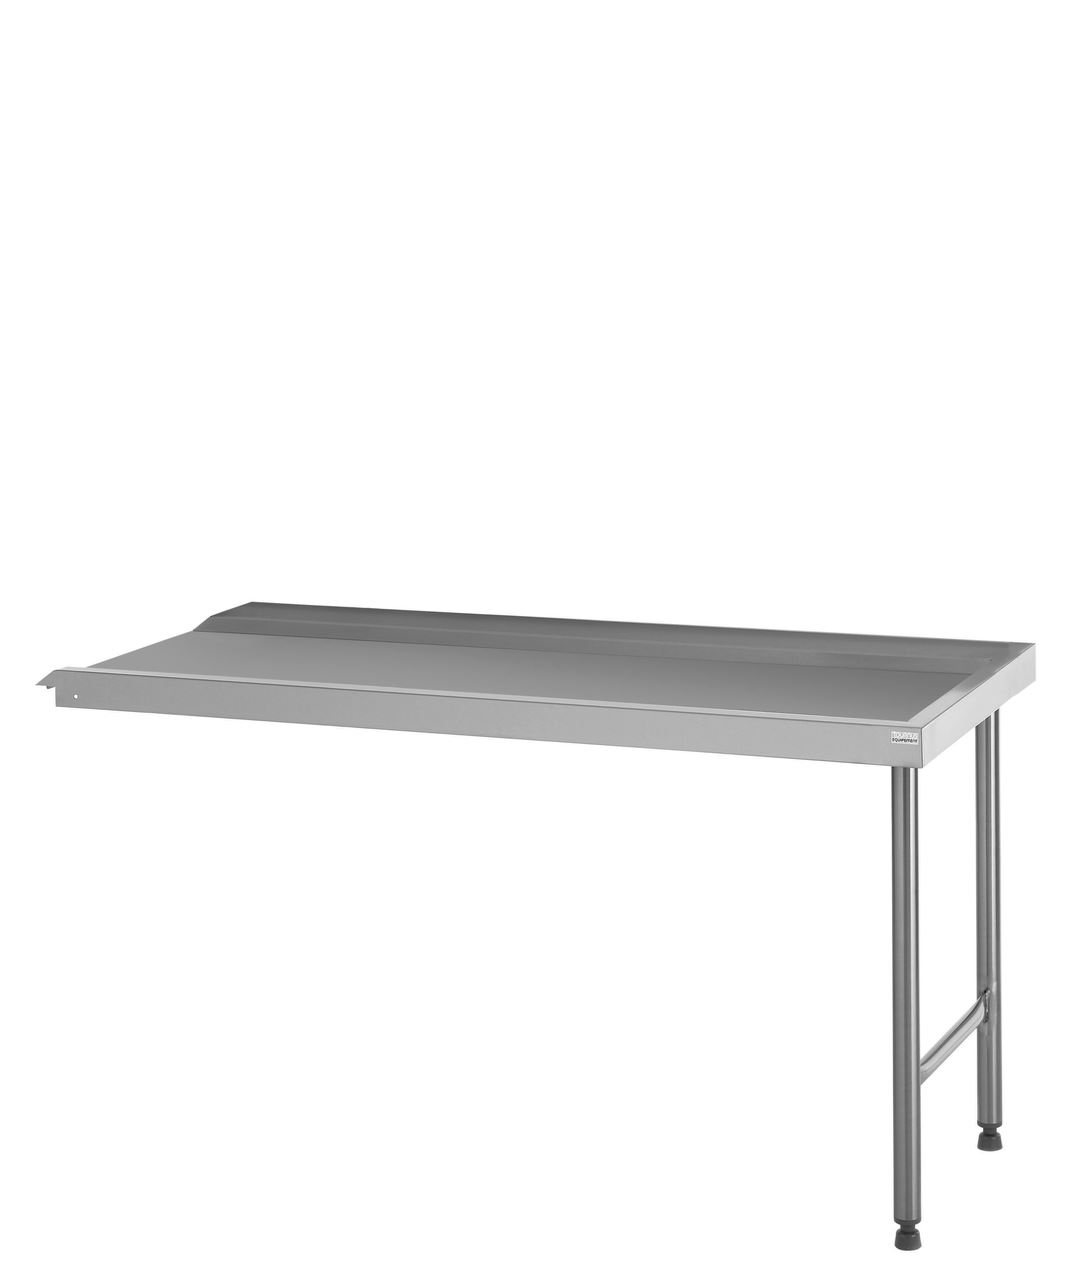 Table standard de sortie MAL raccordable à droite ou à gauche longueur 1600 mm Tournus - 507527